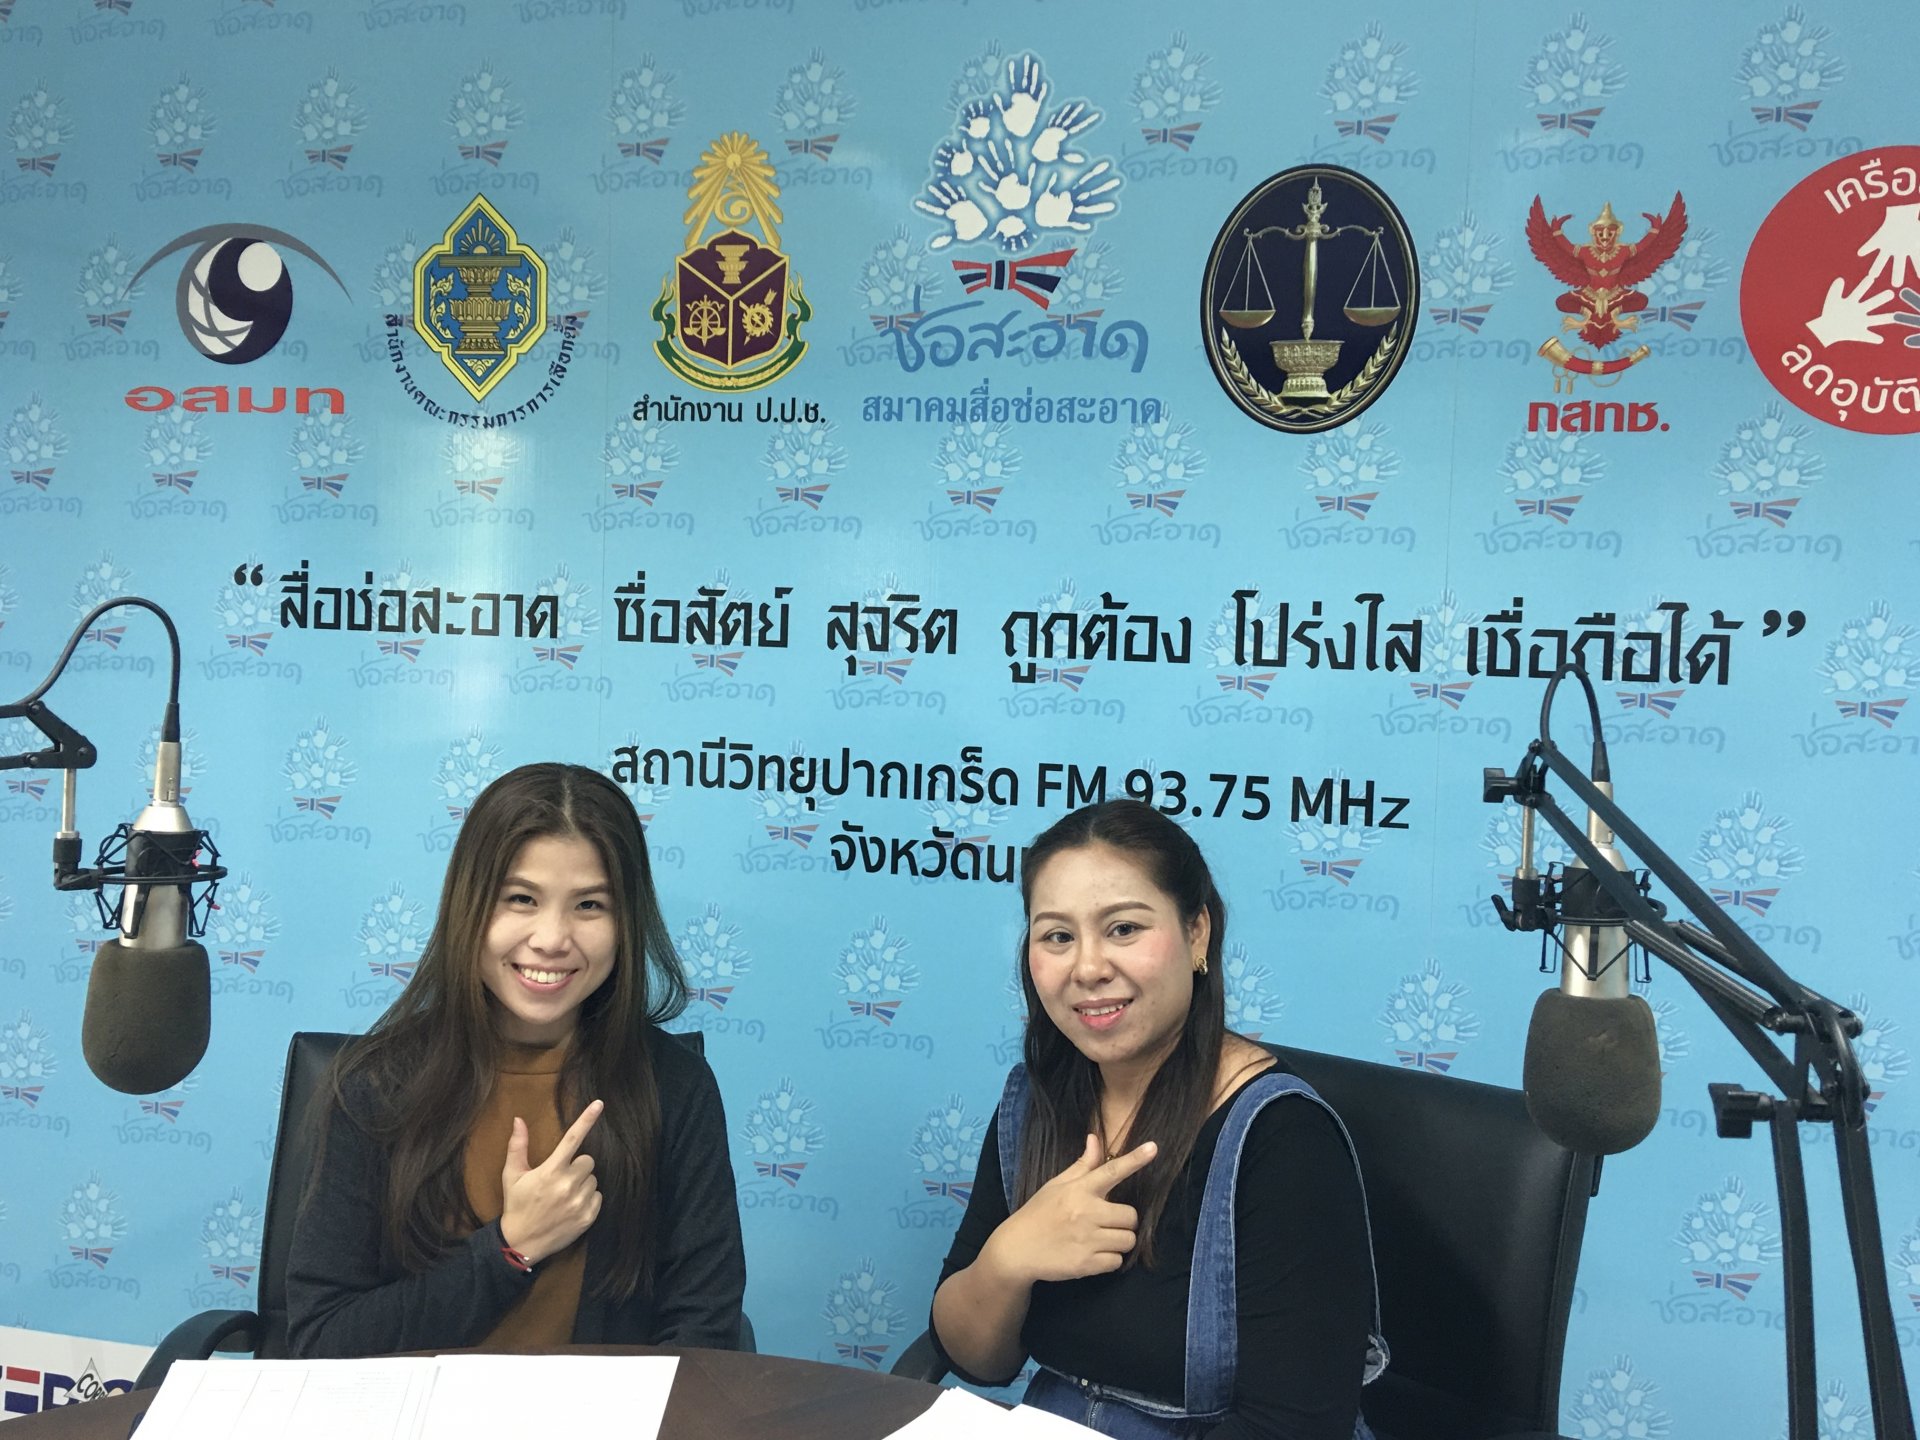 รายการ “คนไทยไม่ทนต่อการทุจริต” วันอาทิตย์ที่ 27 มิถุนายน 2564 เวลา 18.30-19.00 น.